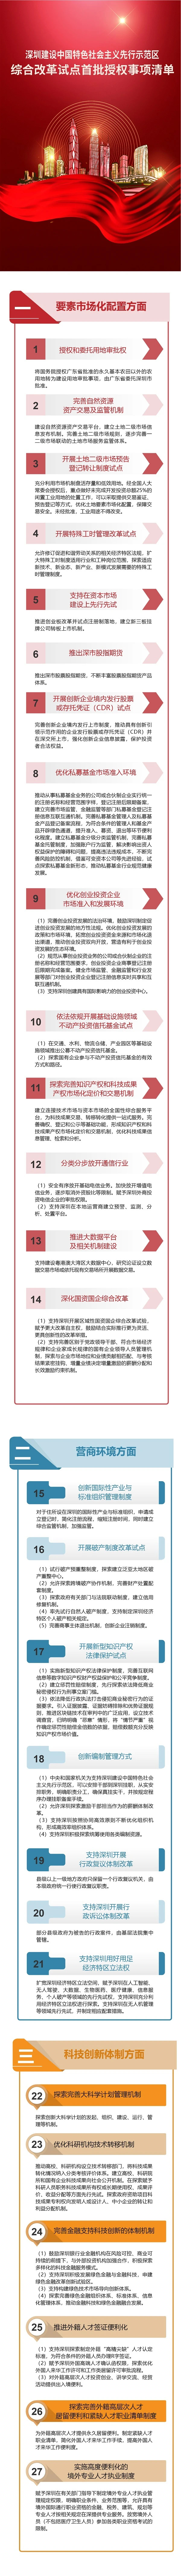 深圳40条授权事项清单迅速发布：释放哪些信号，利好哪些股